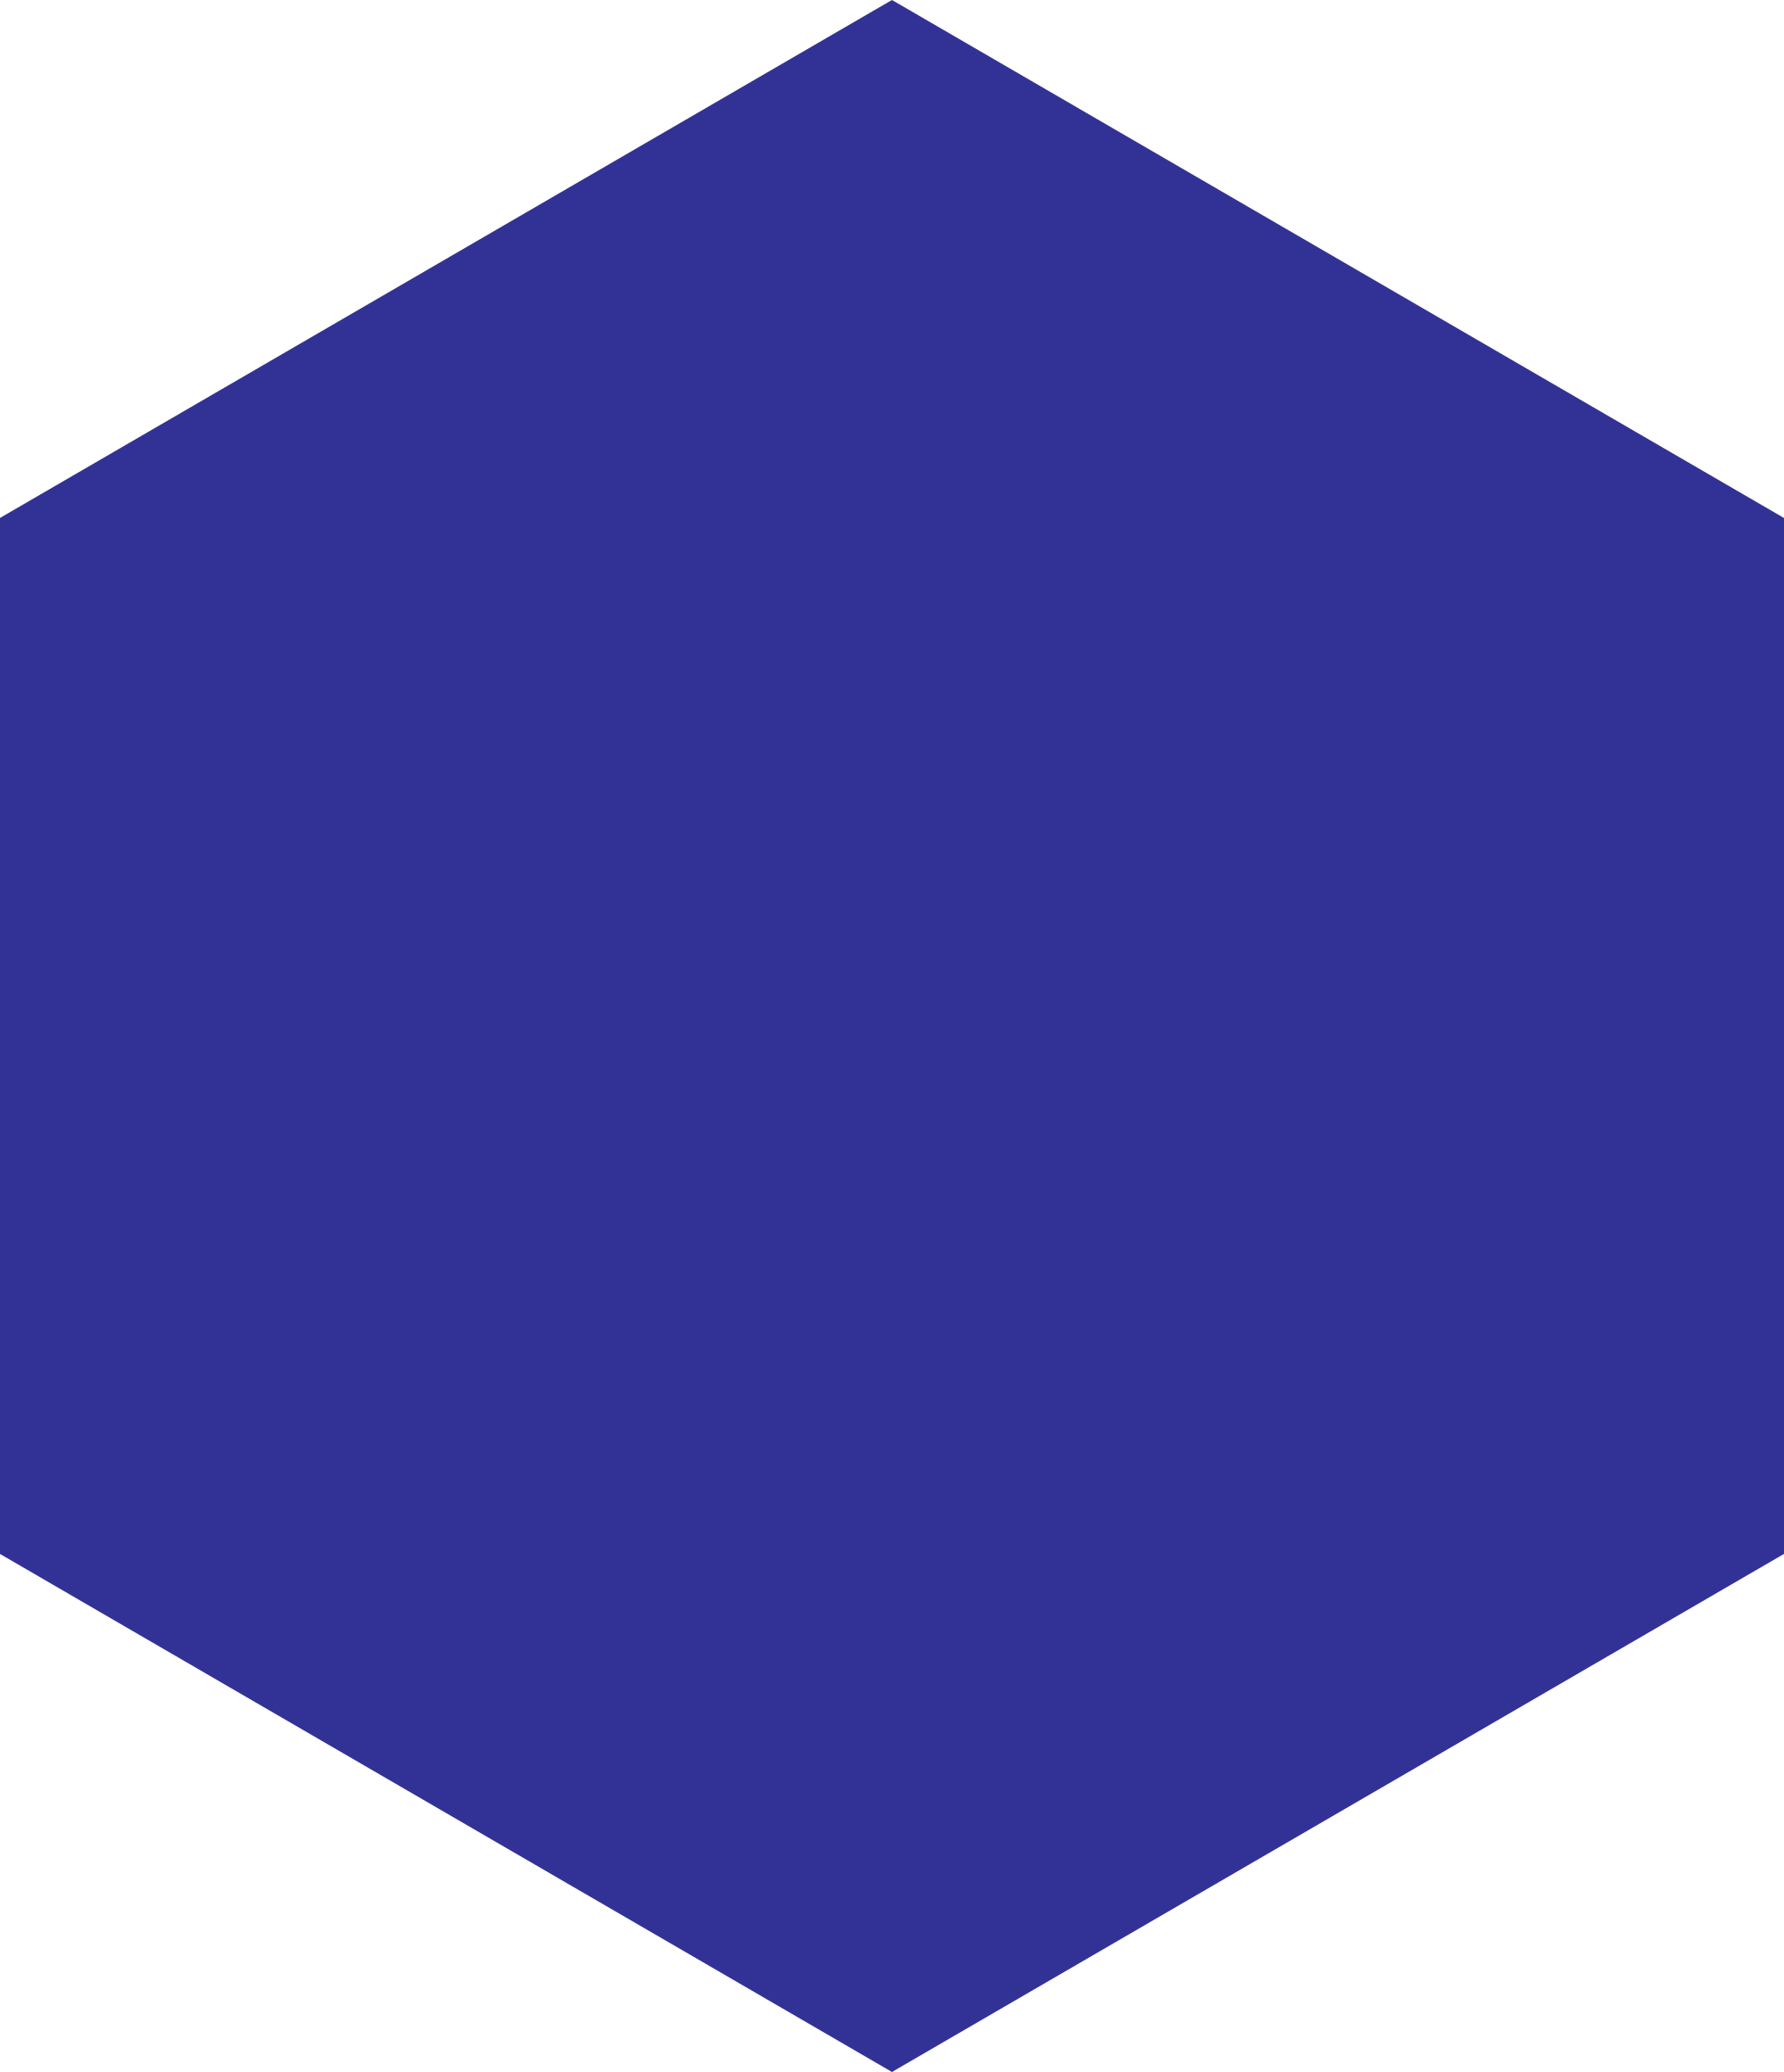 File vertex hexagonal icon. Hexagon clipart blank